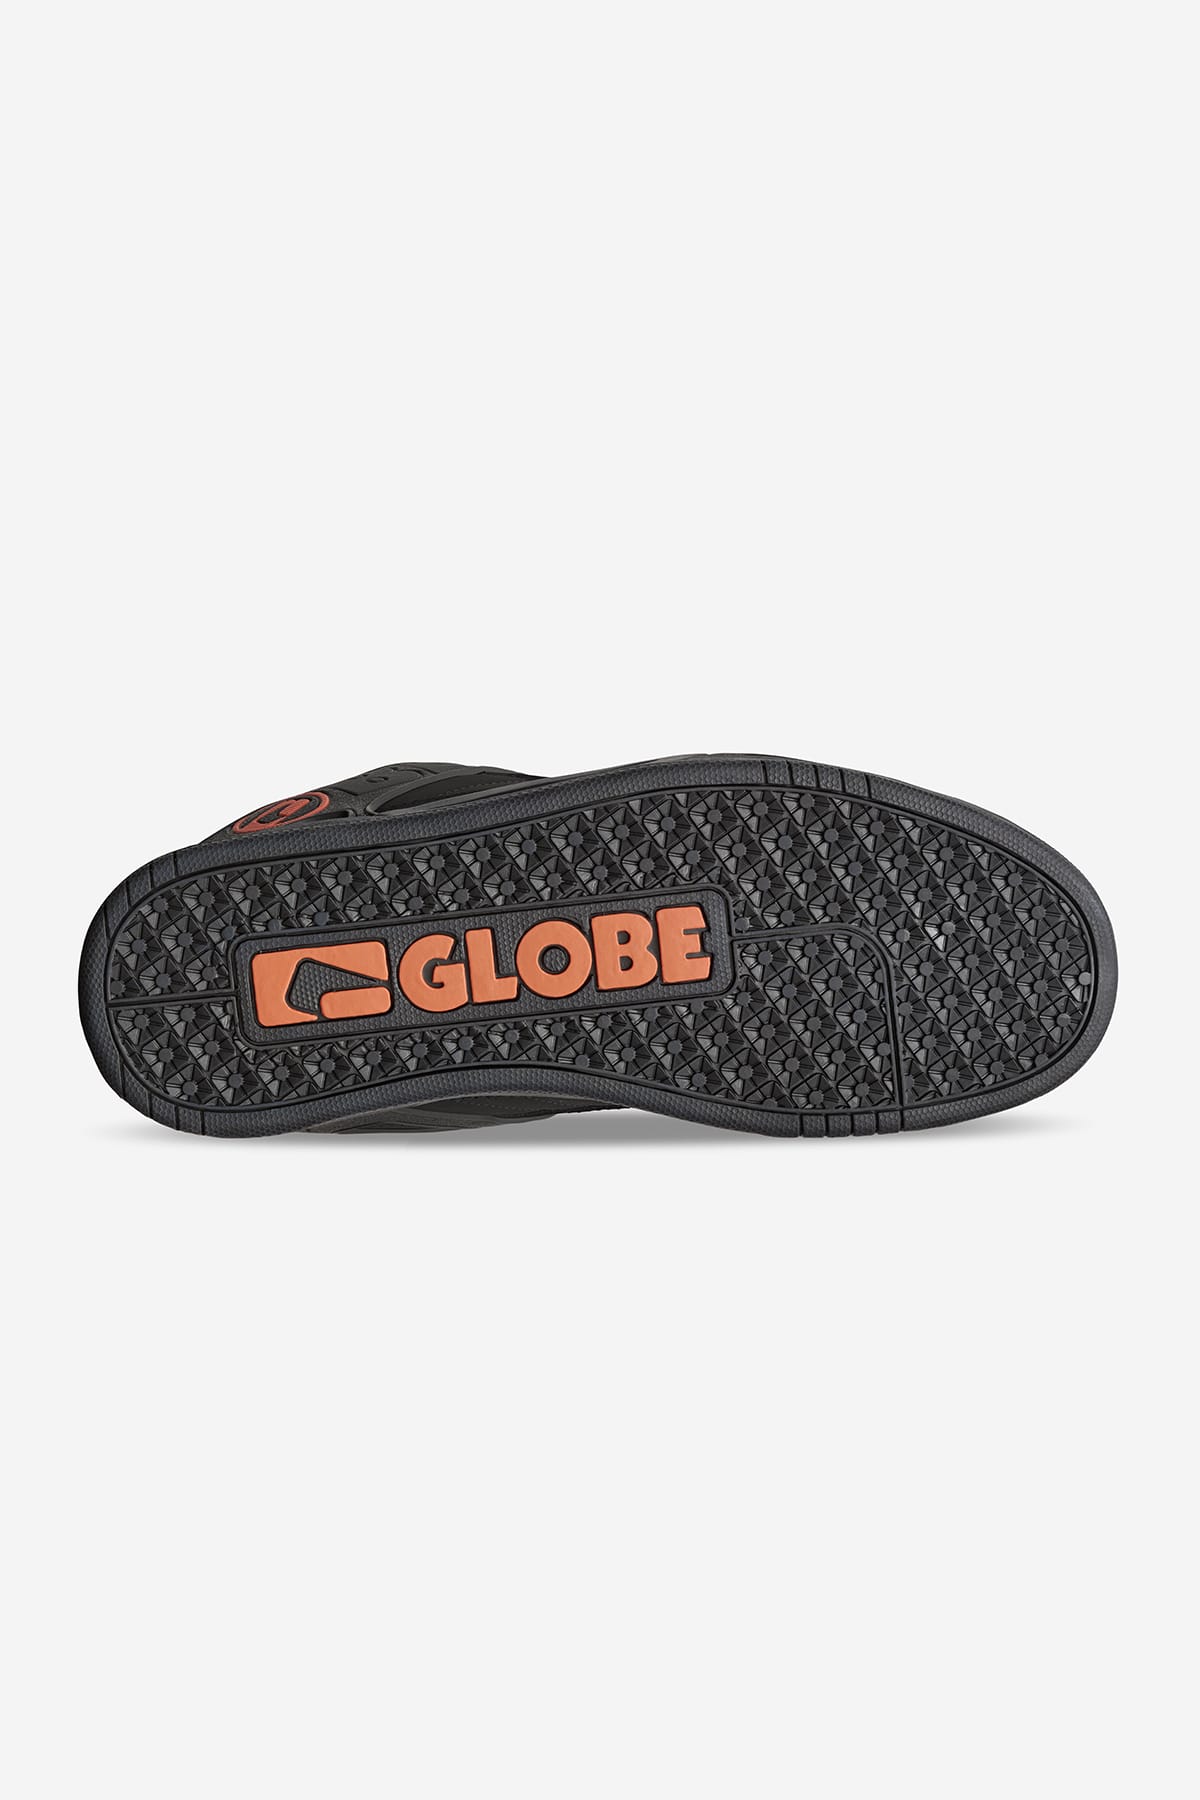 Globe - Tilt - Black/Black/Brons - skateboard Schoenen